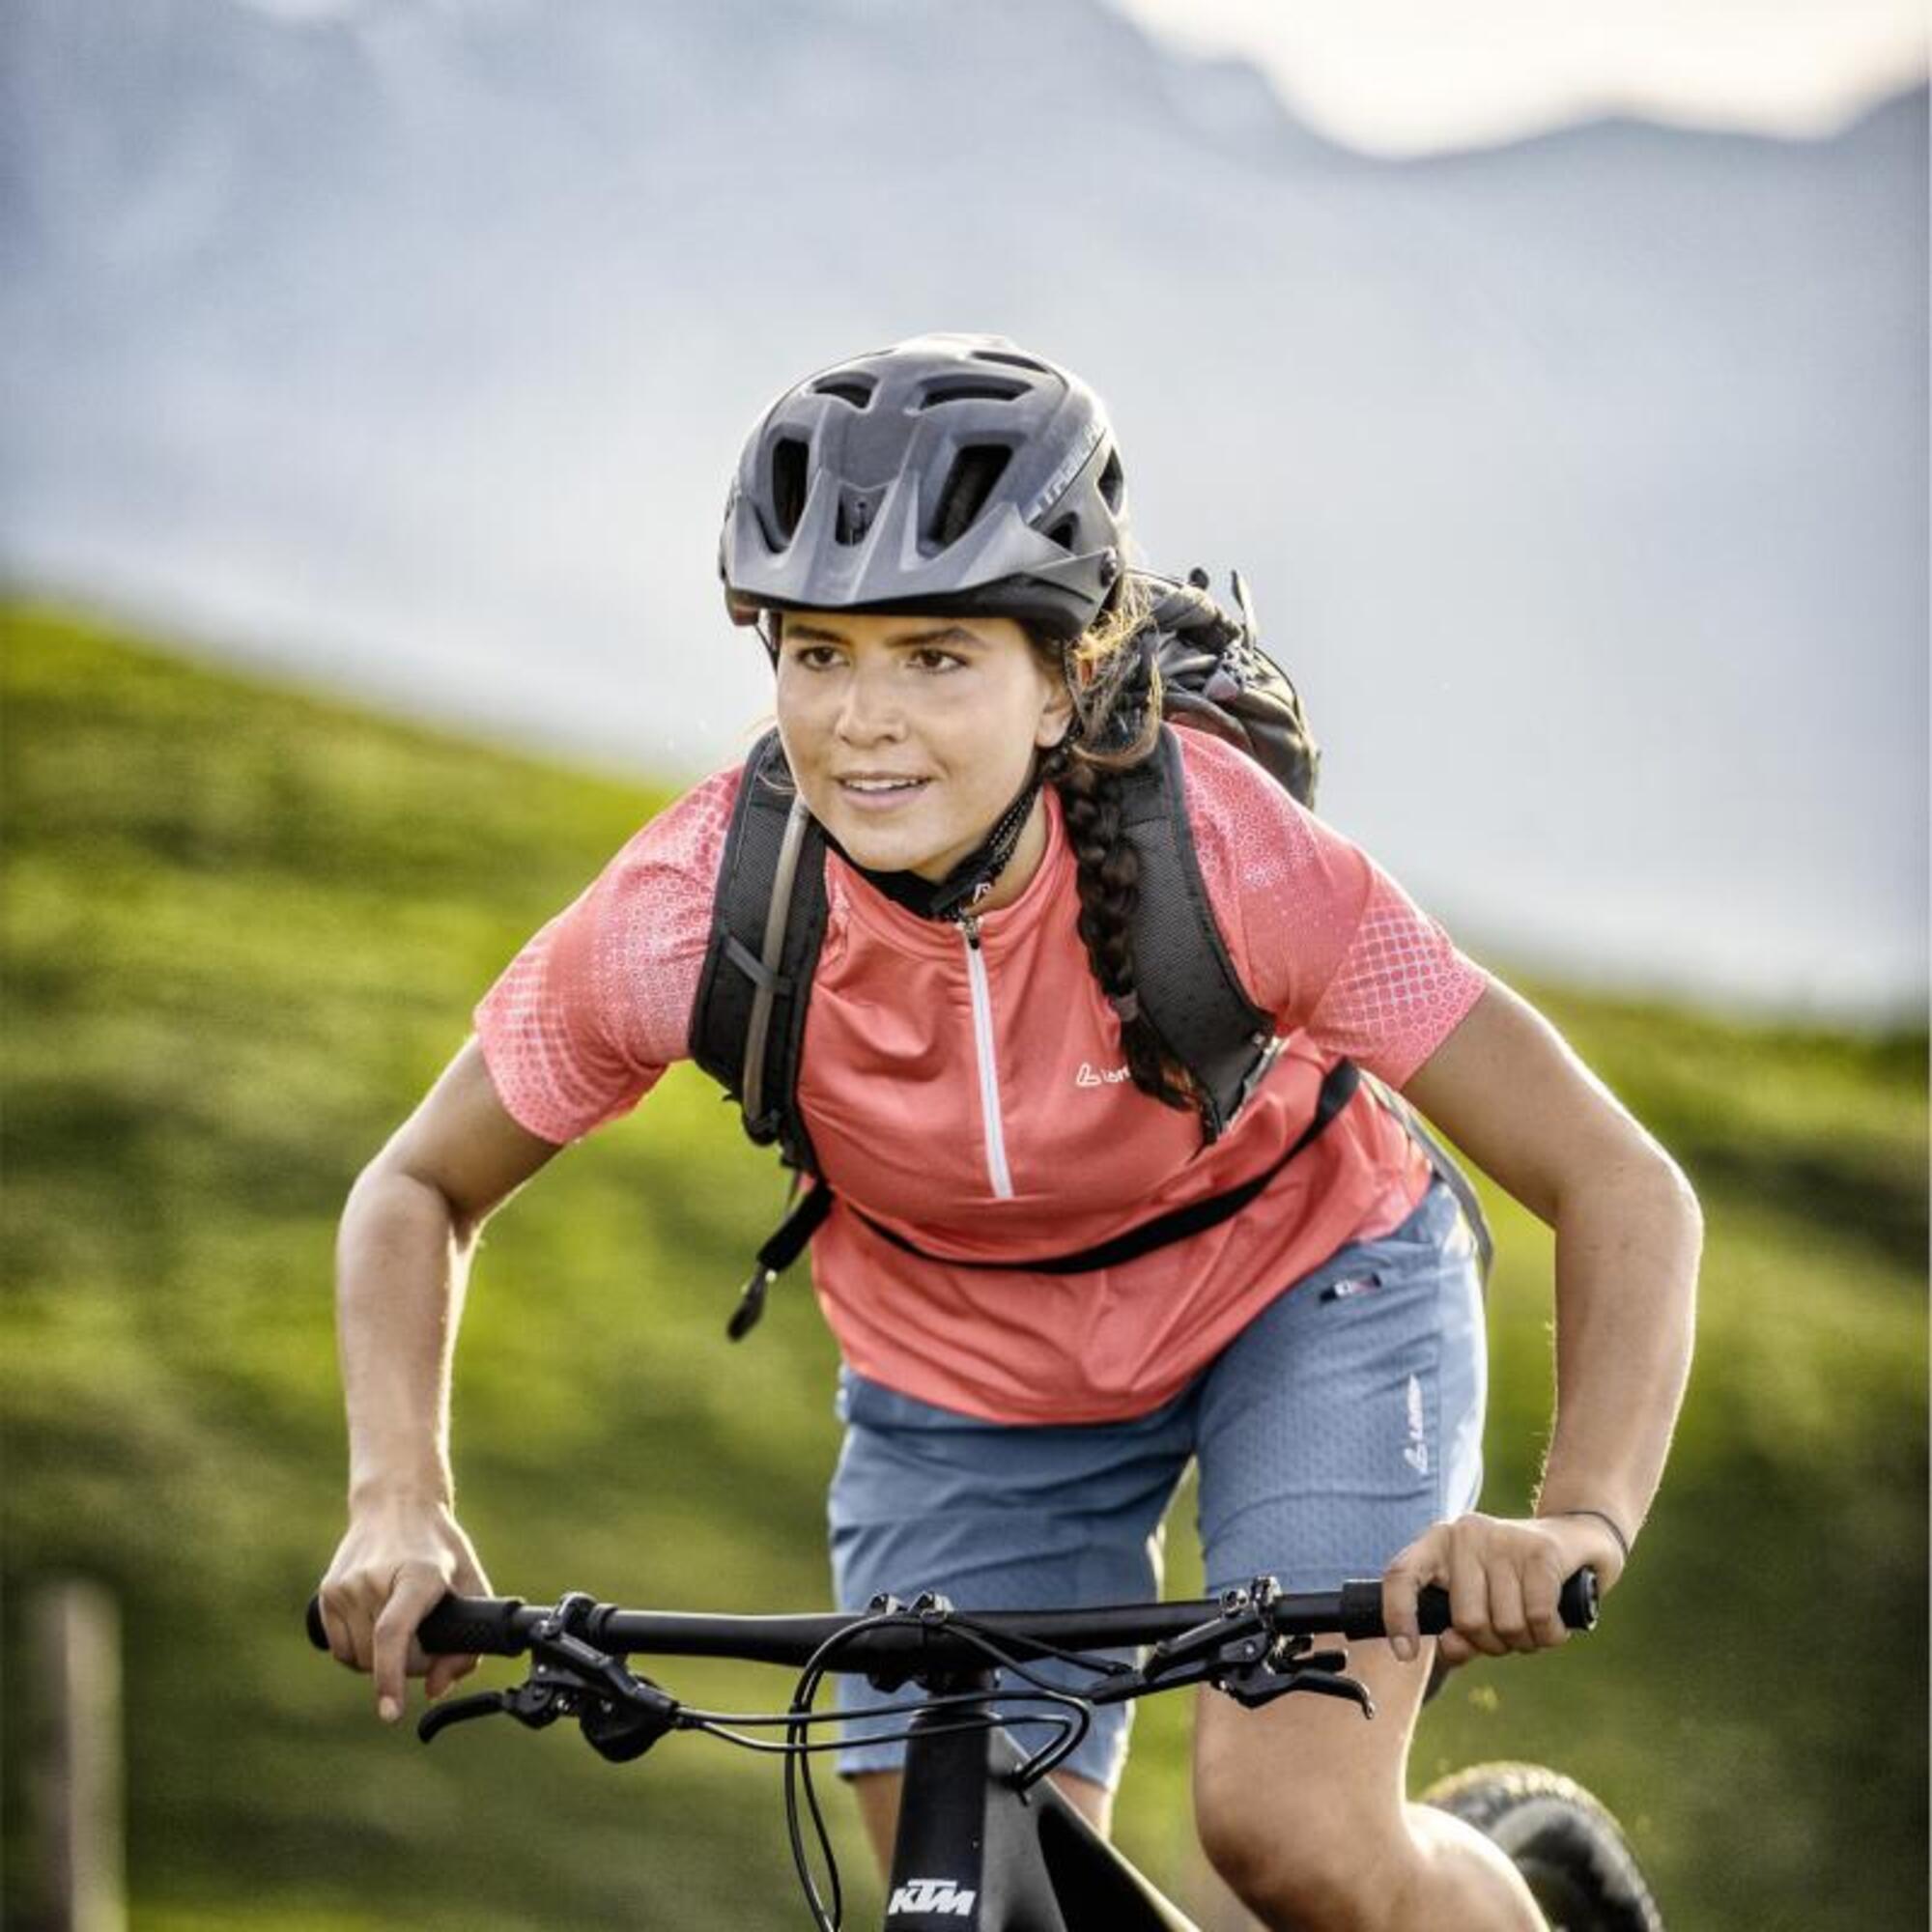 Chemise cycliste à manches courtes pour femmes W Bike Shirt HZ Rise 3.0 - Bleu